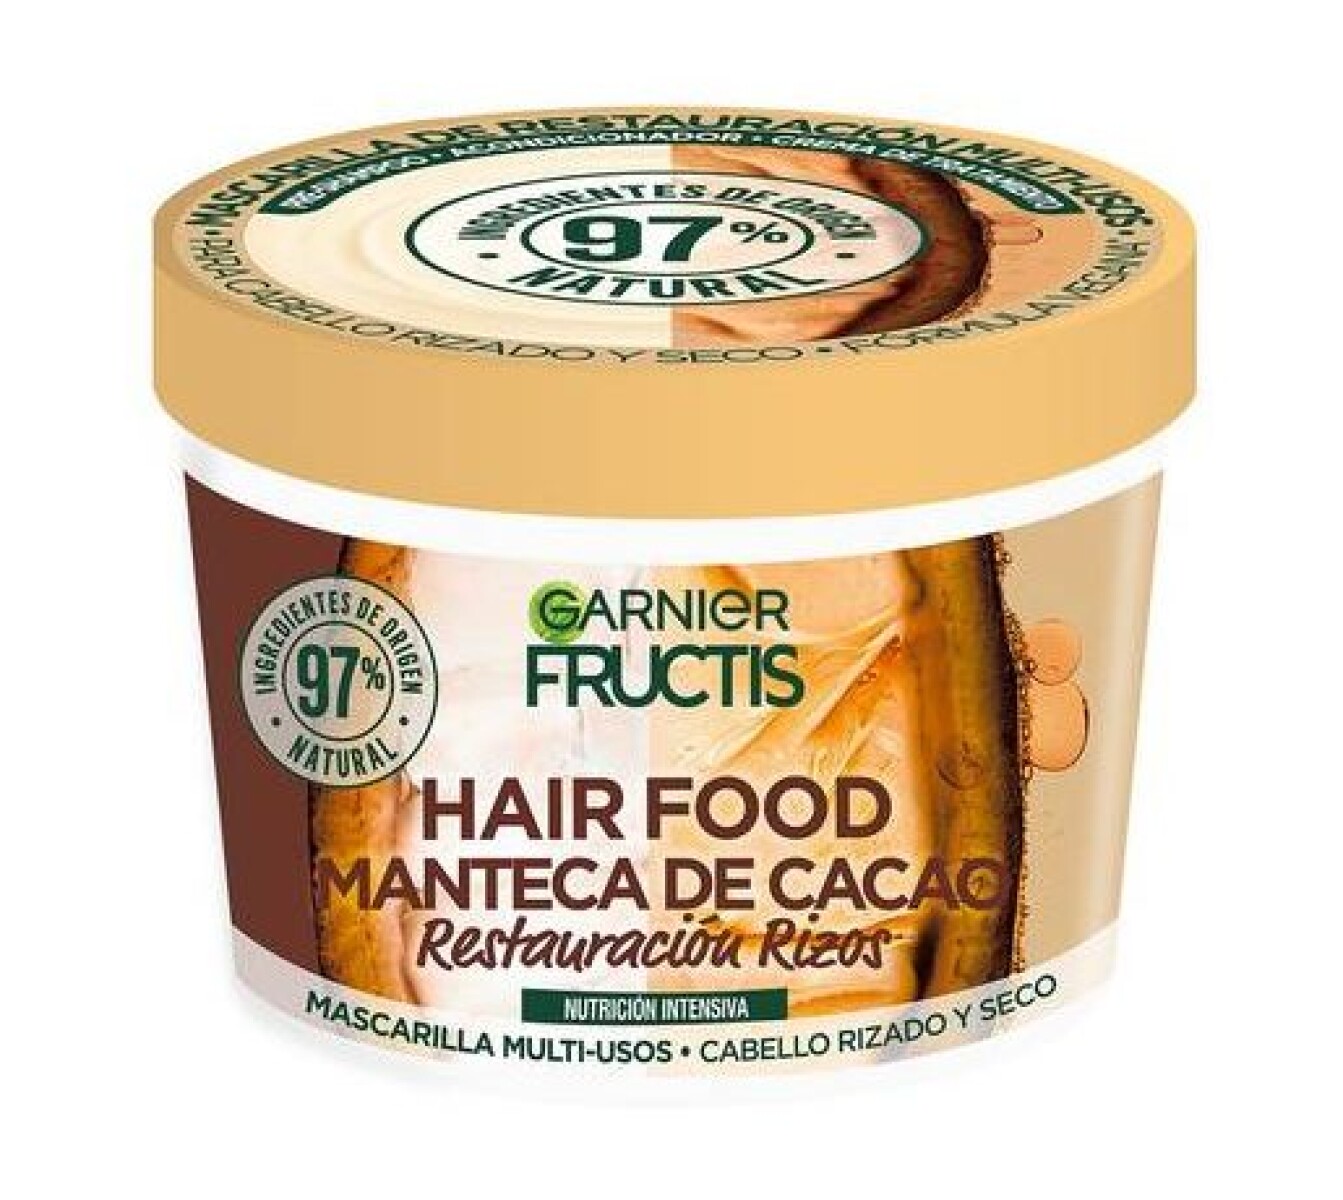 Fructis Hair food mascarilla para cabello - Manteca de cacao 